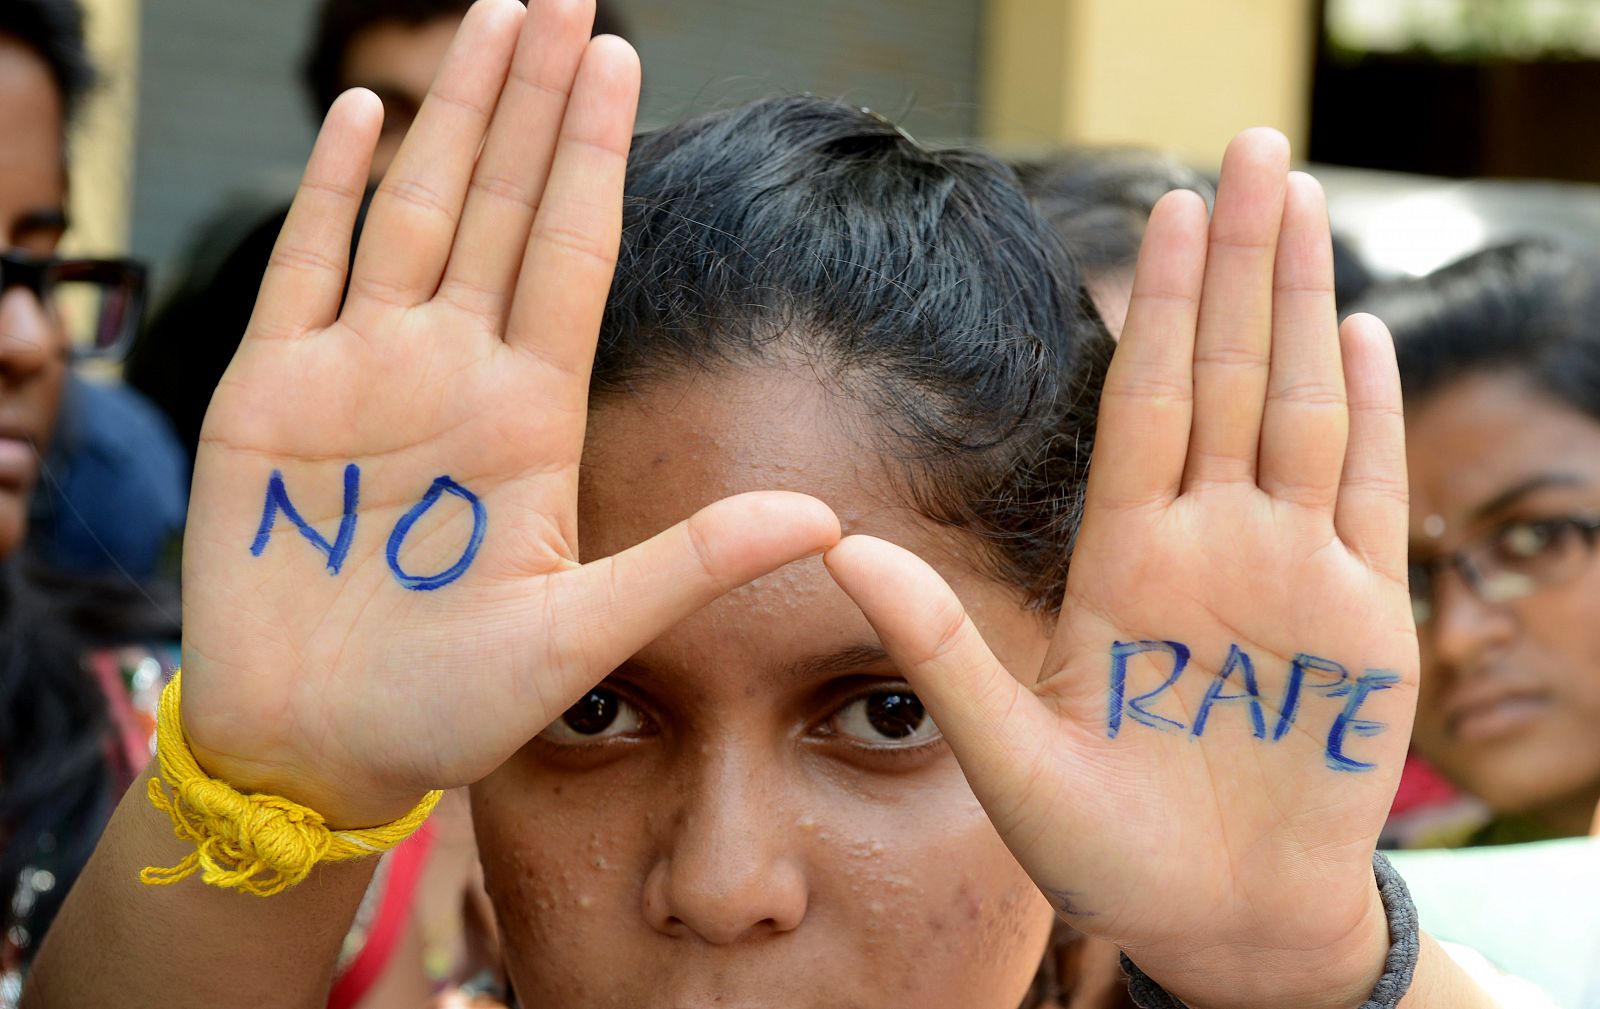 Una manifestante muestra en sus manos la frase "Violaciones no" durante una protesta en Hyderabad, India, este viernes